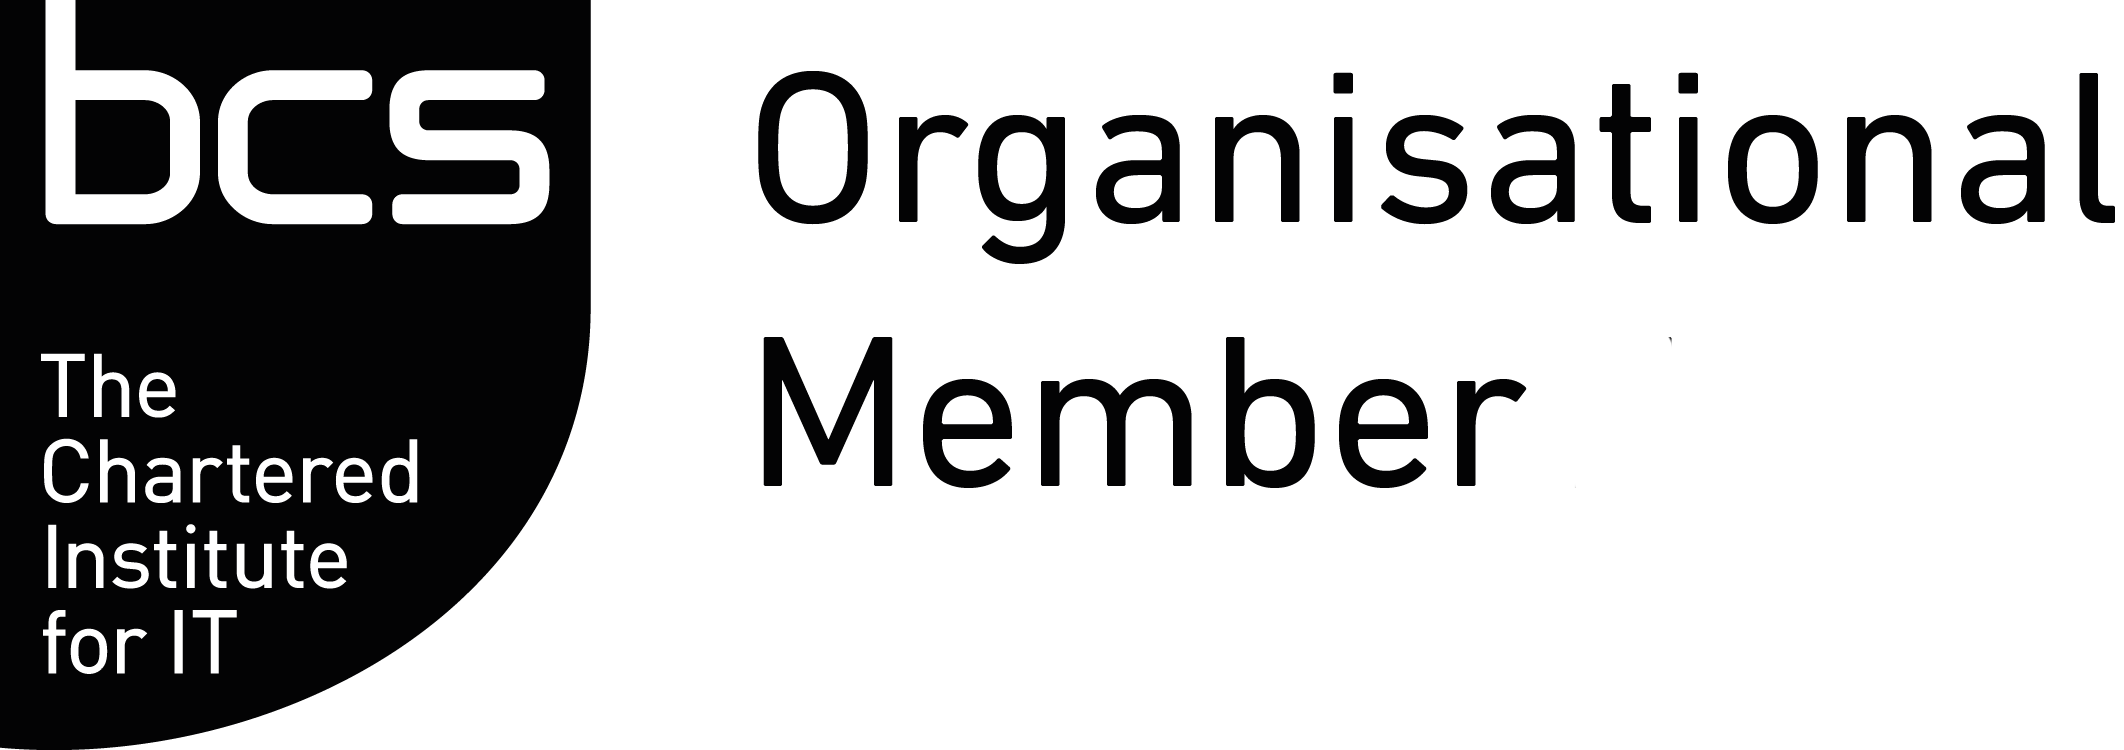 Bcs Organisational Member